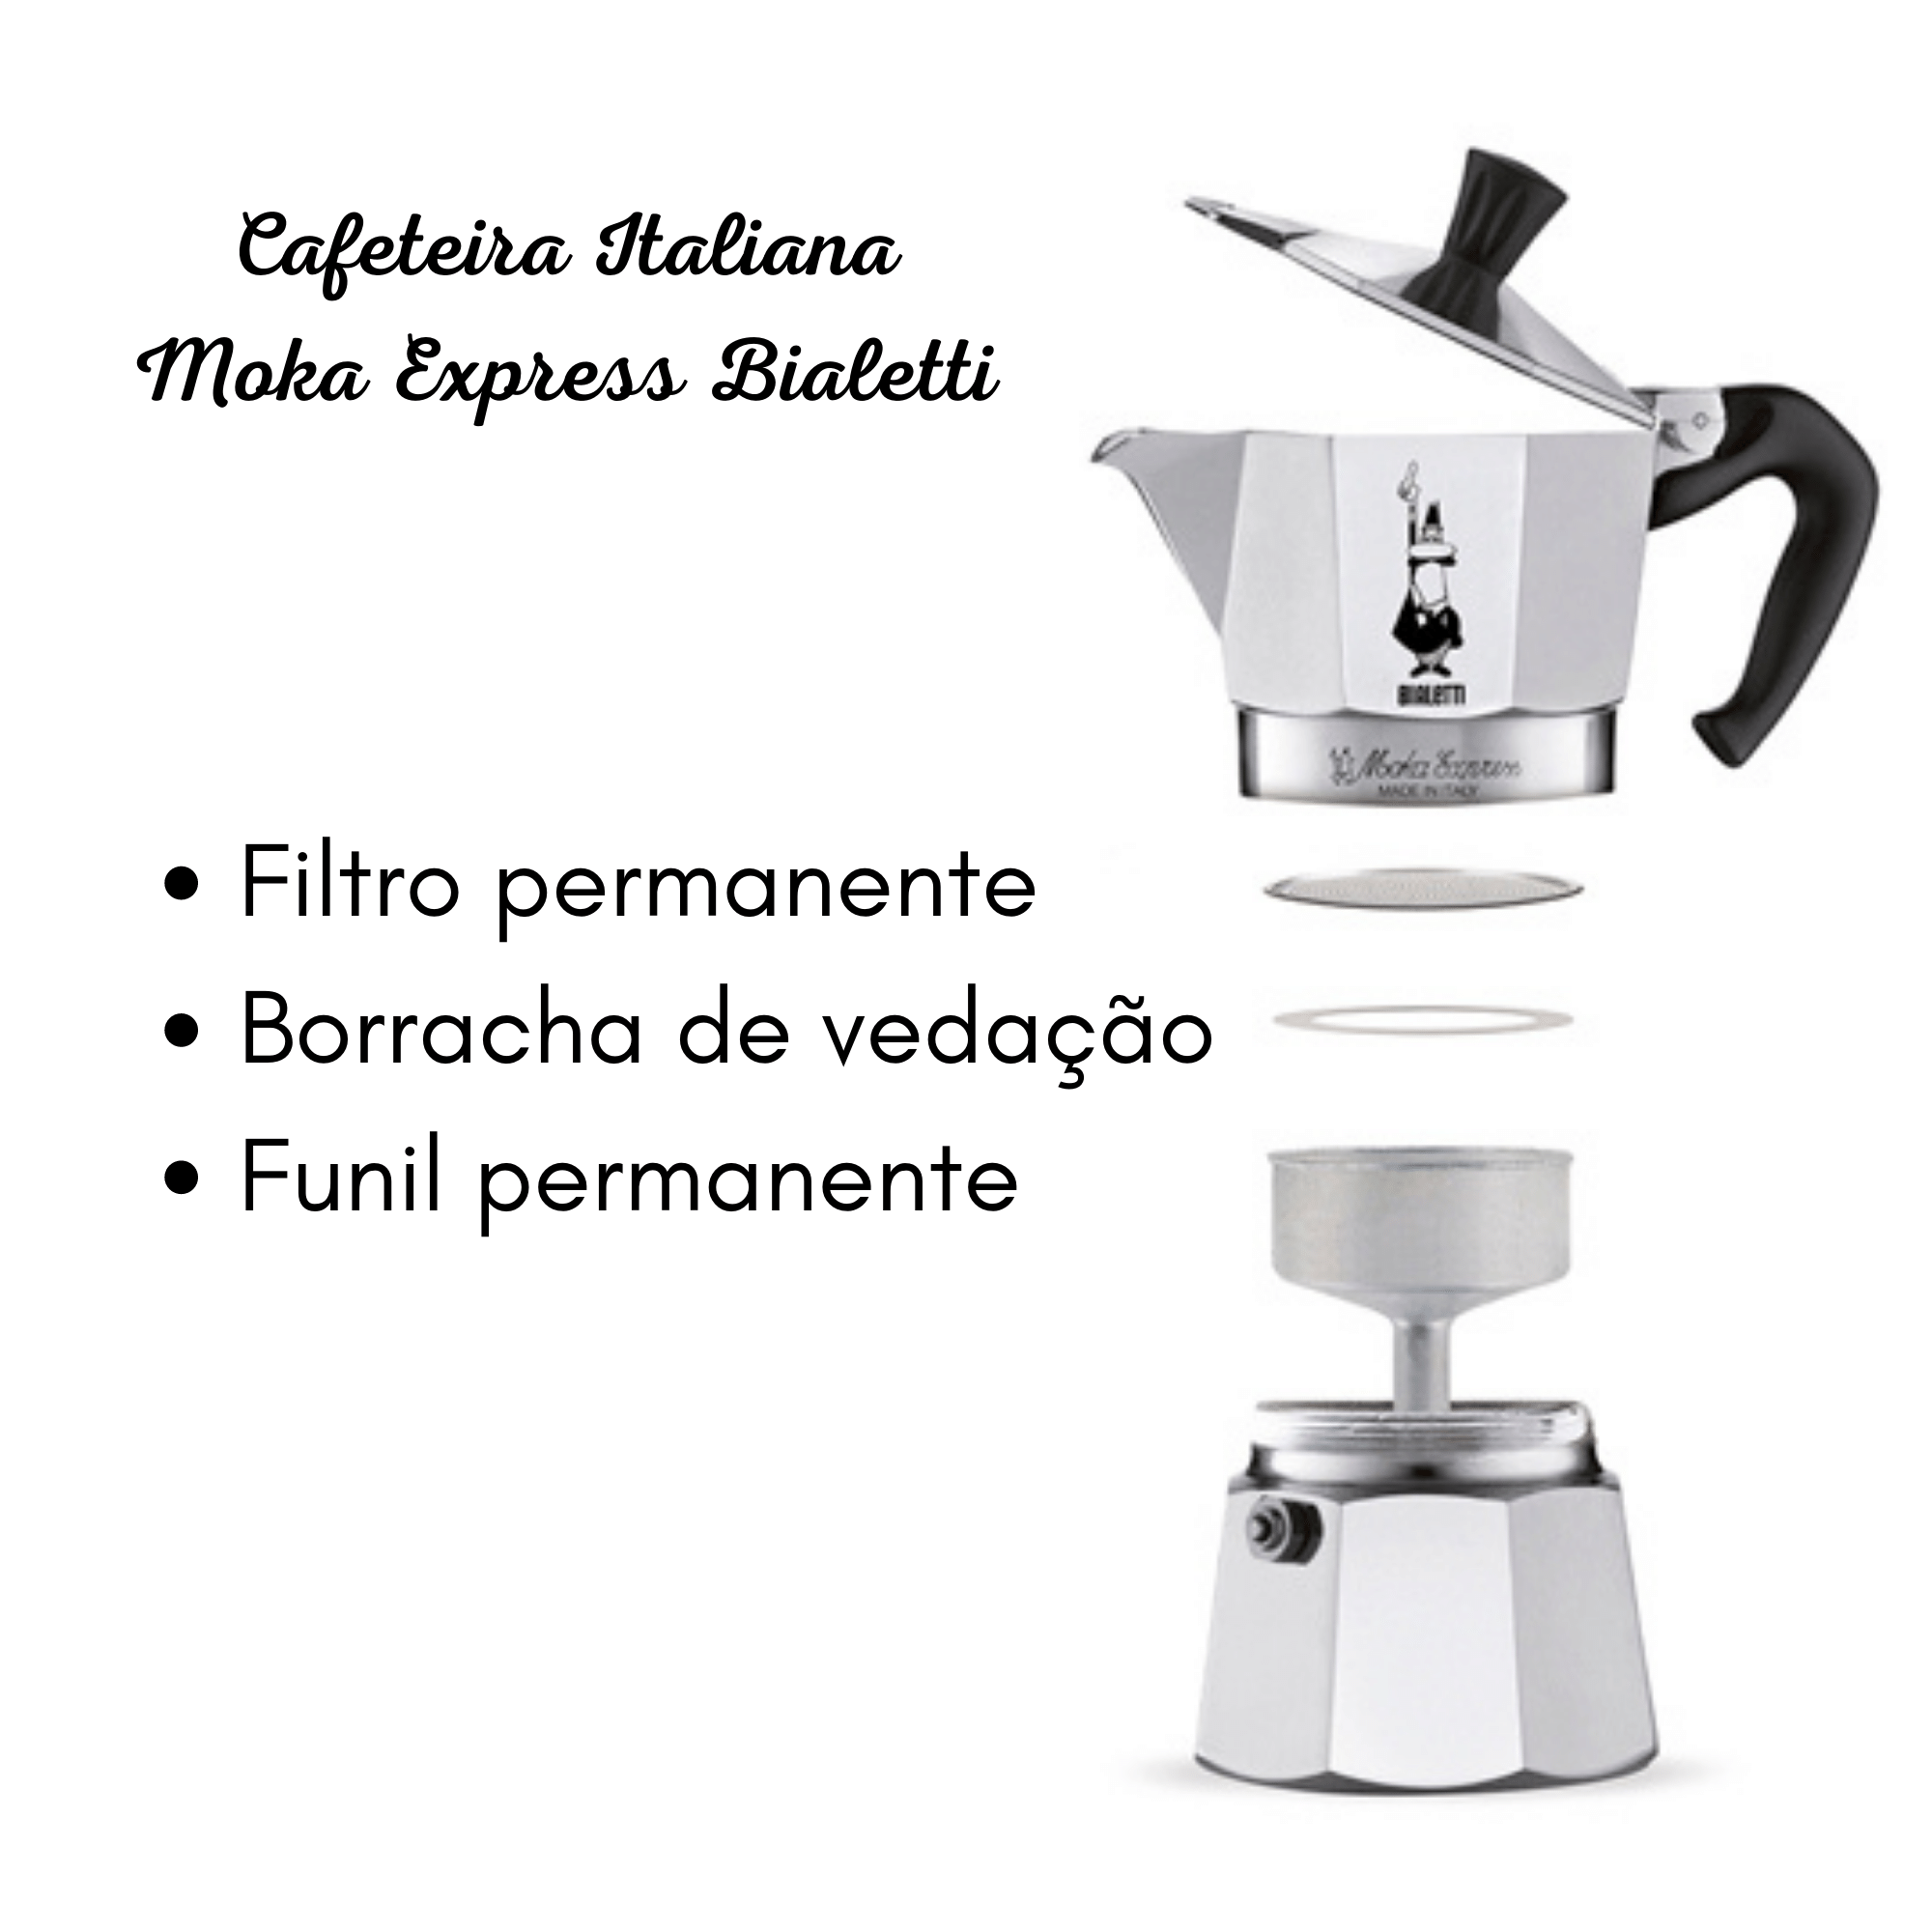 Cafeteira Italiana Moka Express 3 Xícaras - Bialetti - 9